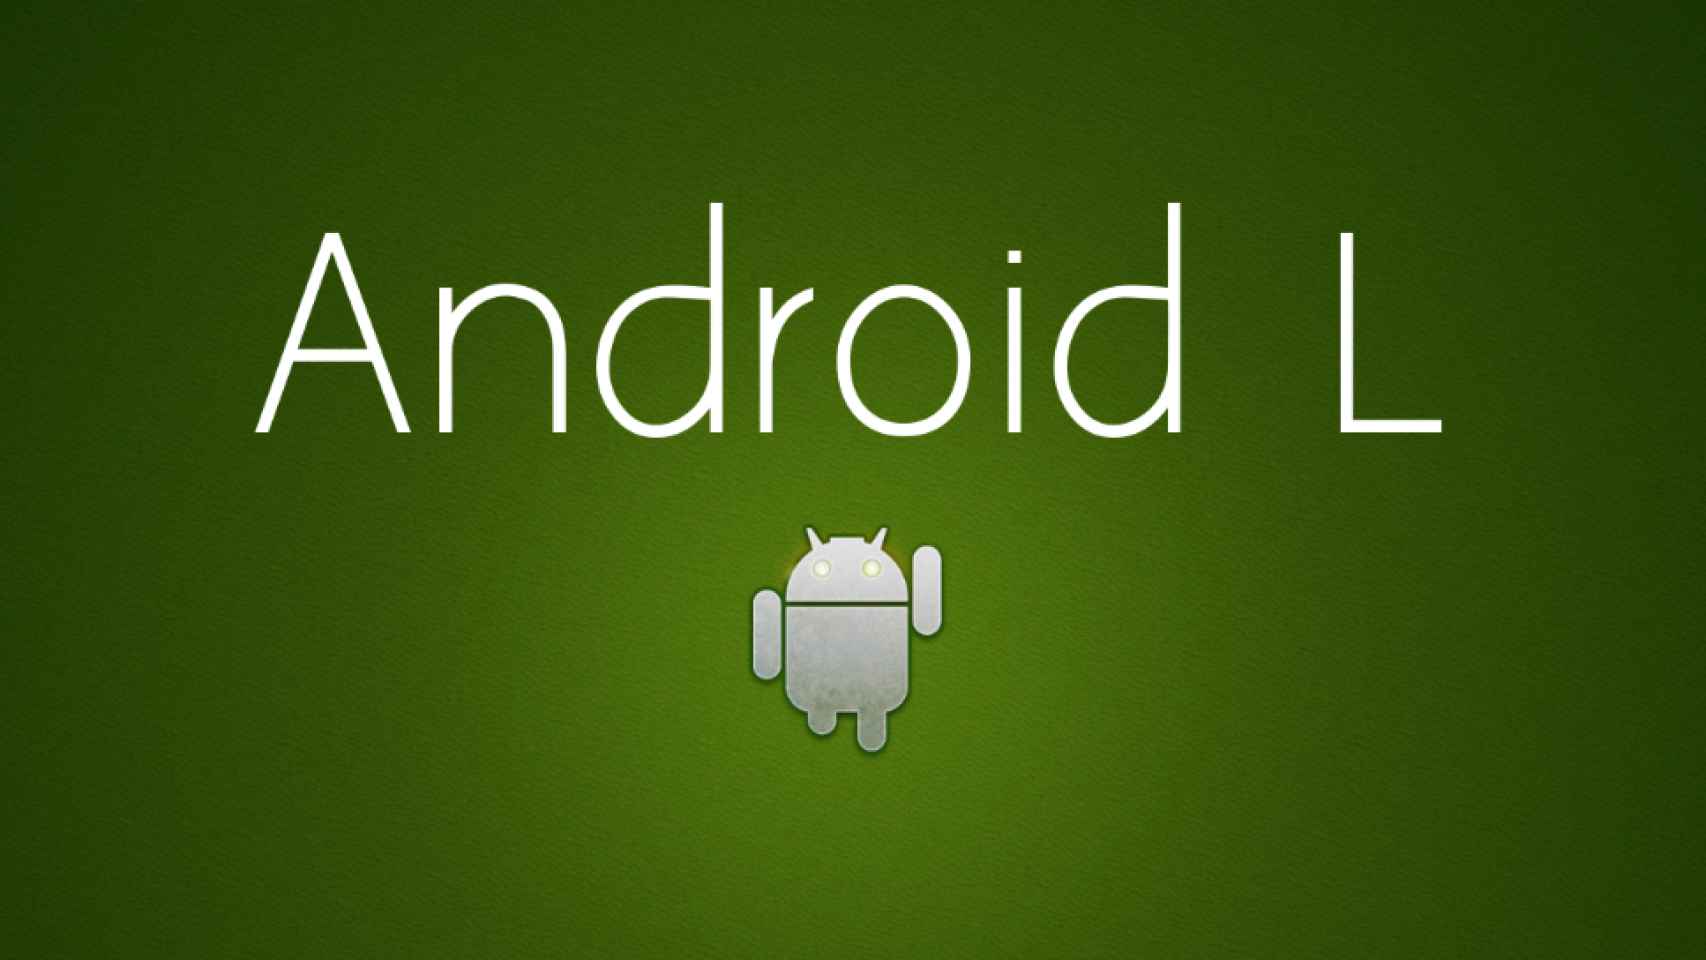 Android «L» aparece en escena, ¿qué sabemos de él?